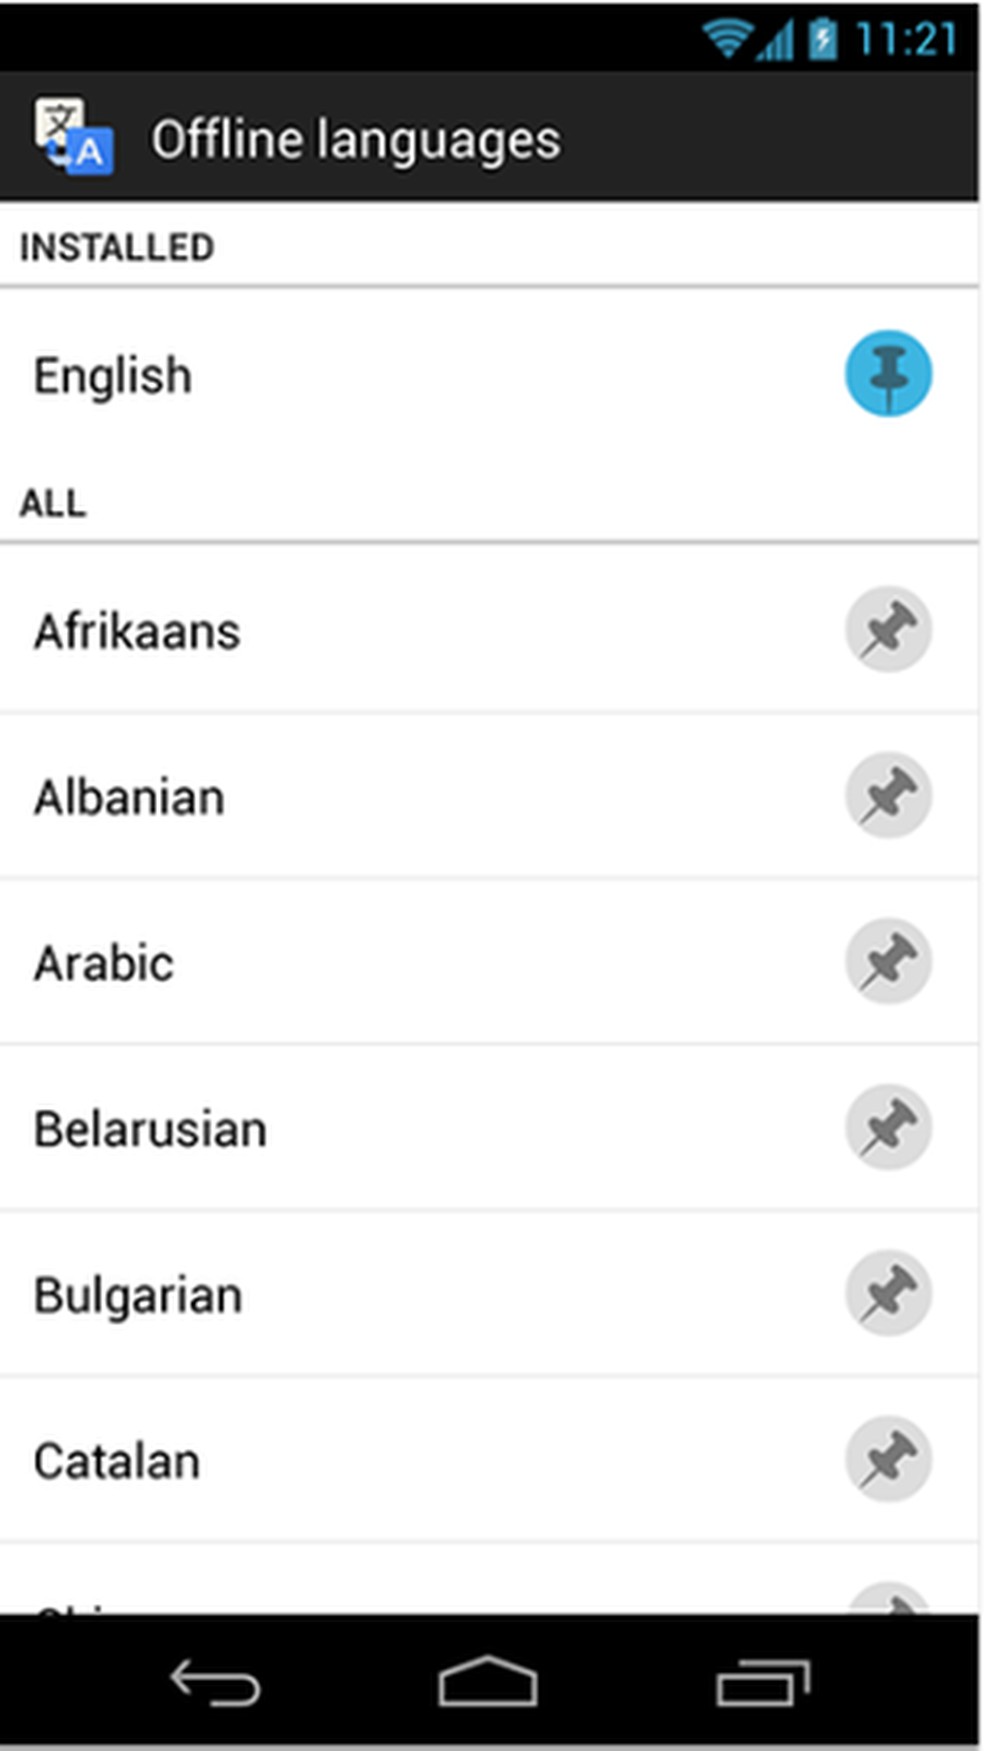 Download do APK de Falar e Traduzir Idiomas para Android